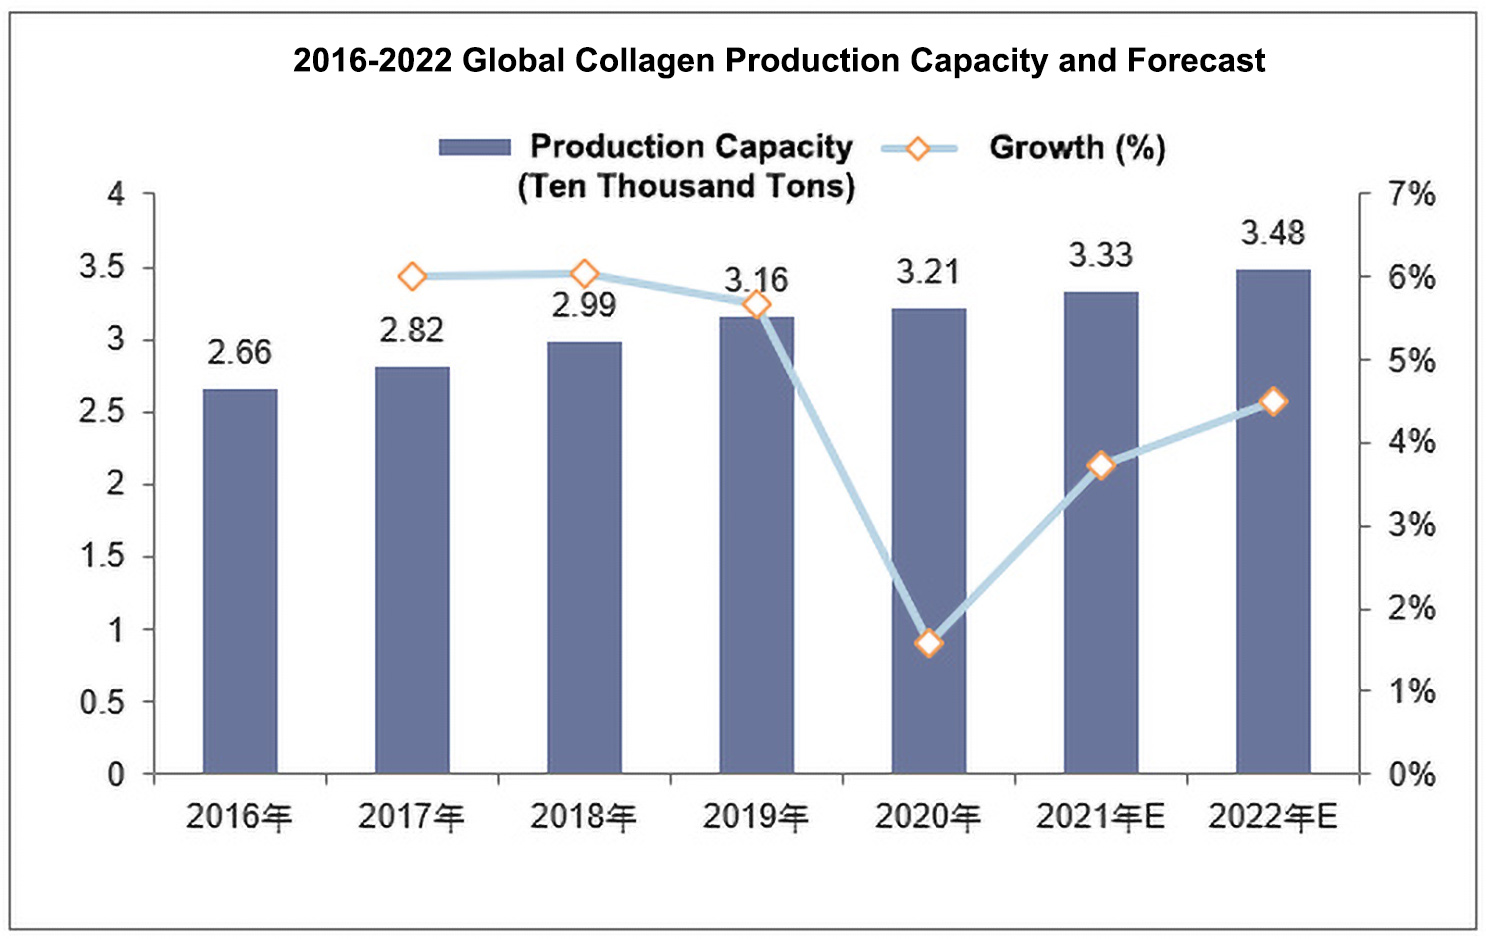 Prospect Report of Global Collagen Industry Development Status 2022-2028